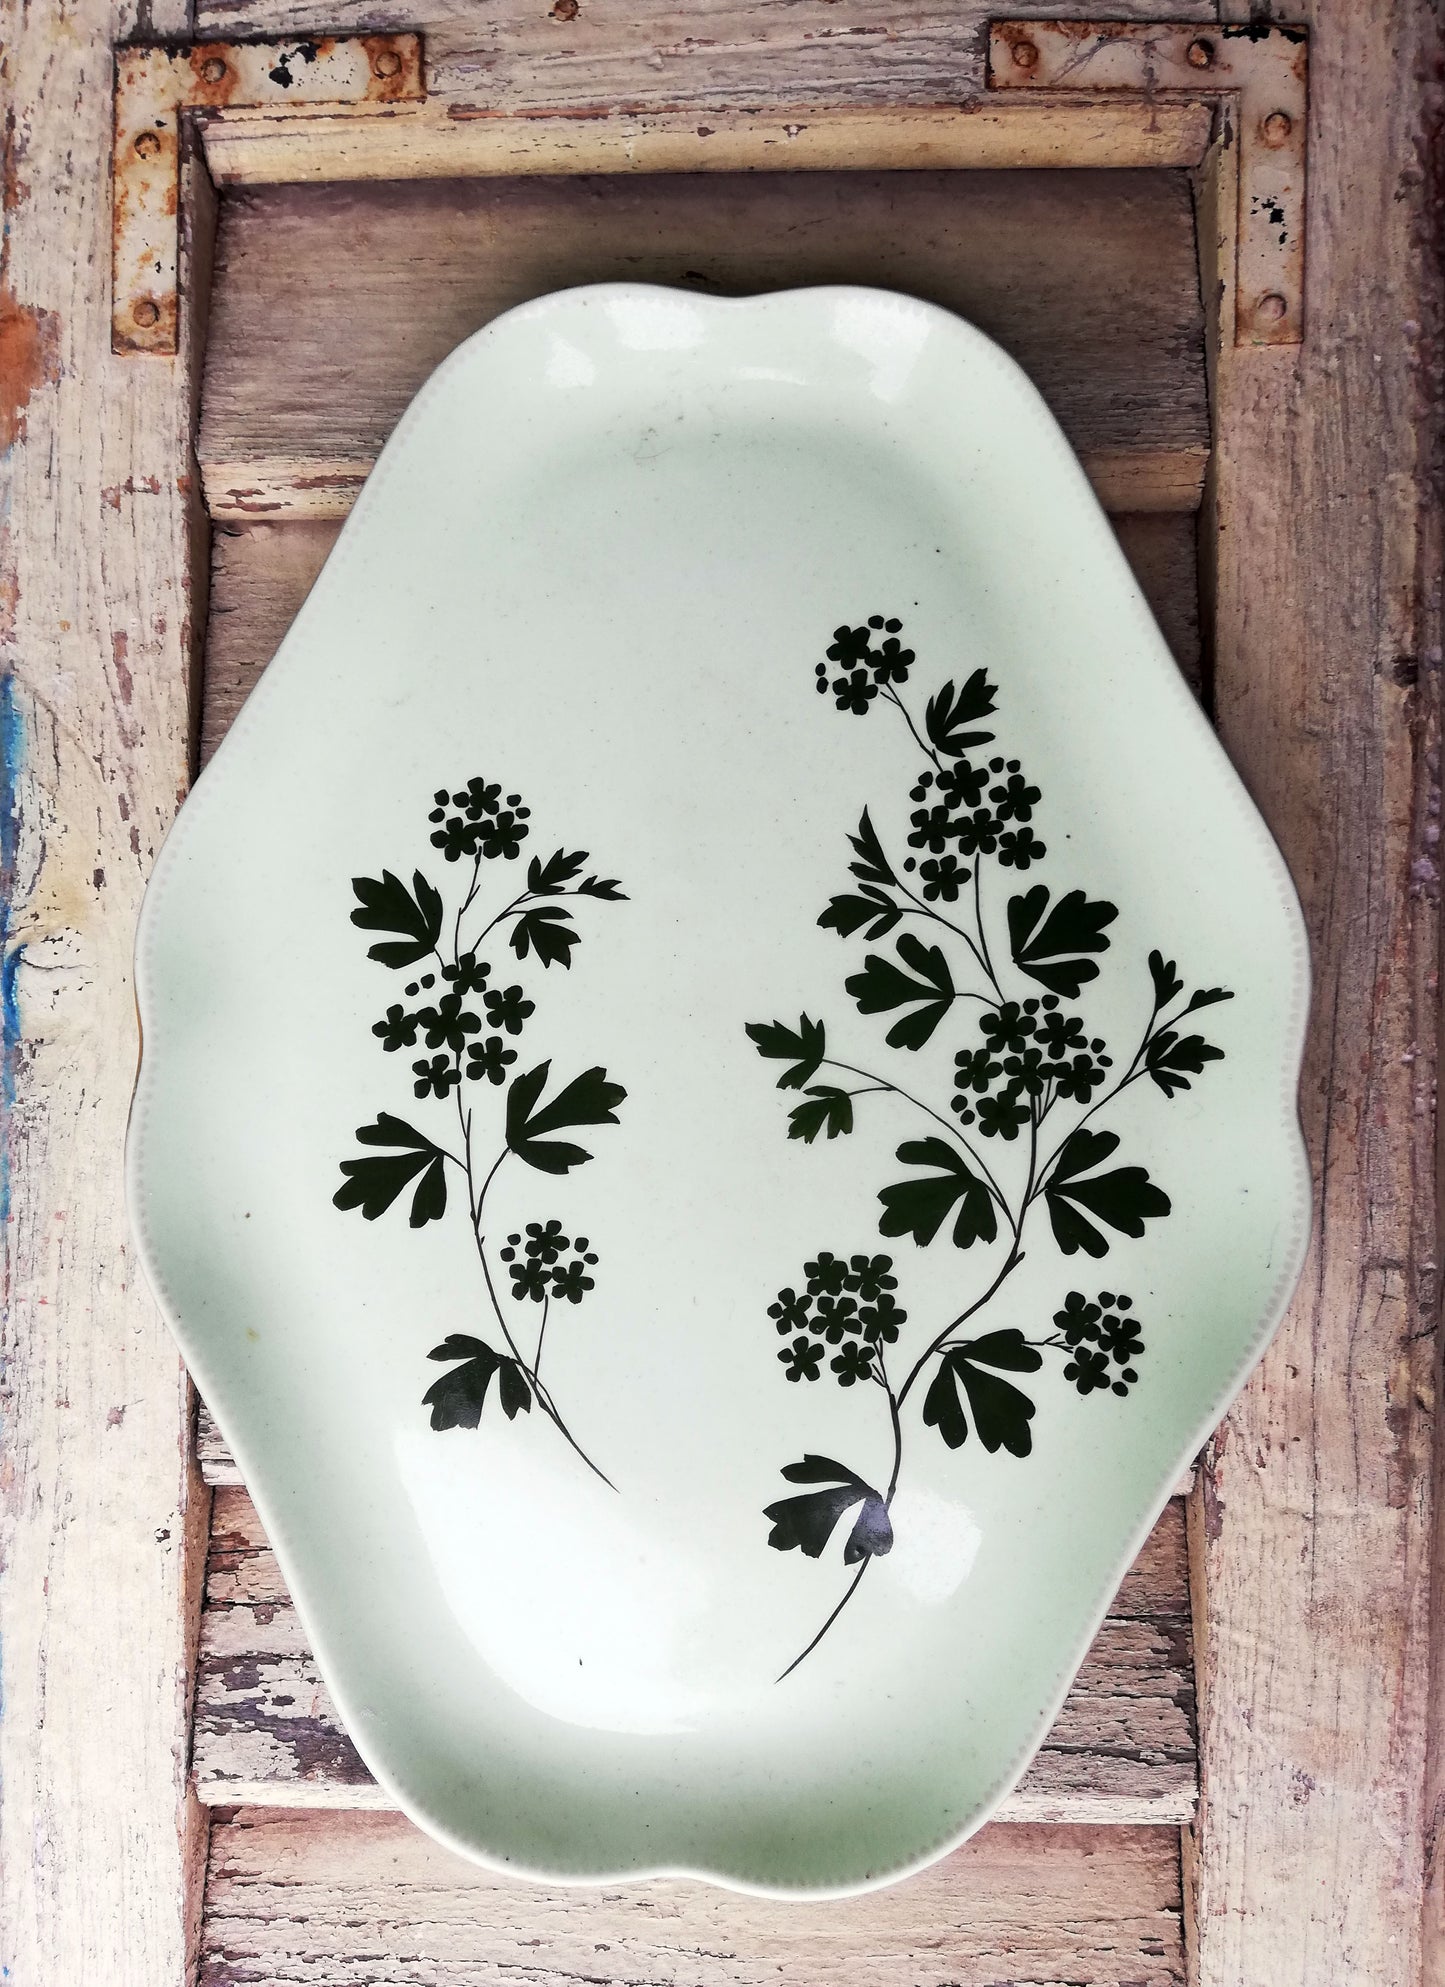 Vintage green ceramic serving platter